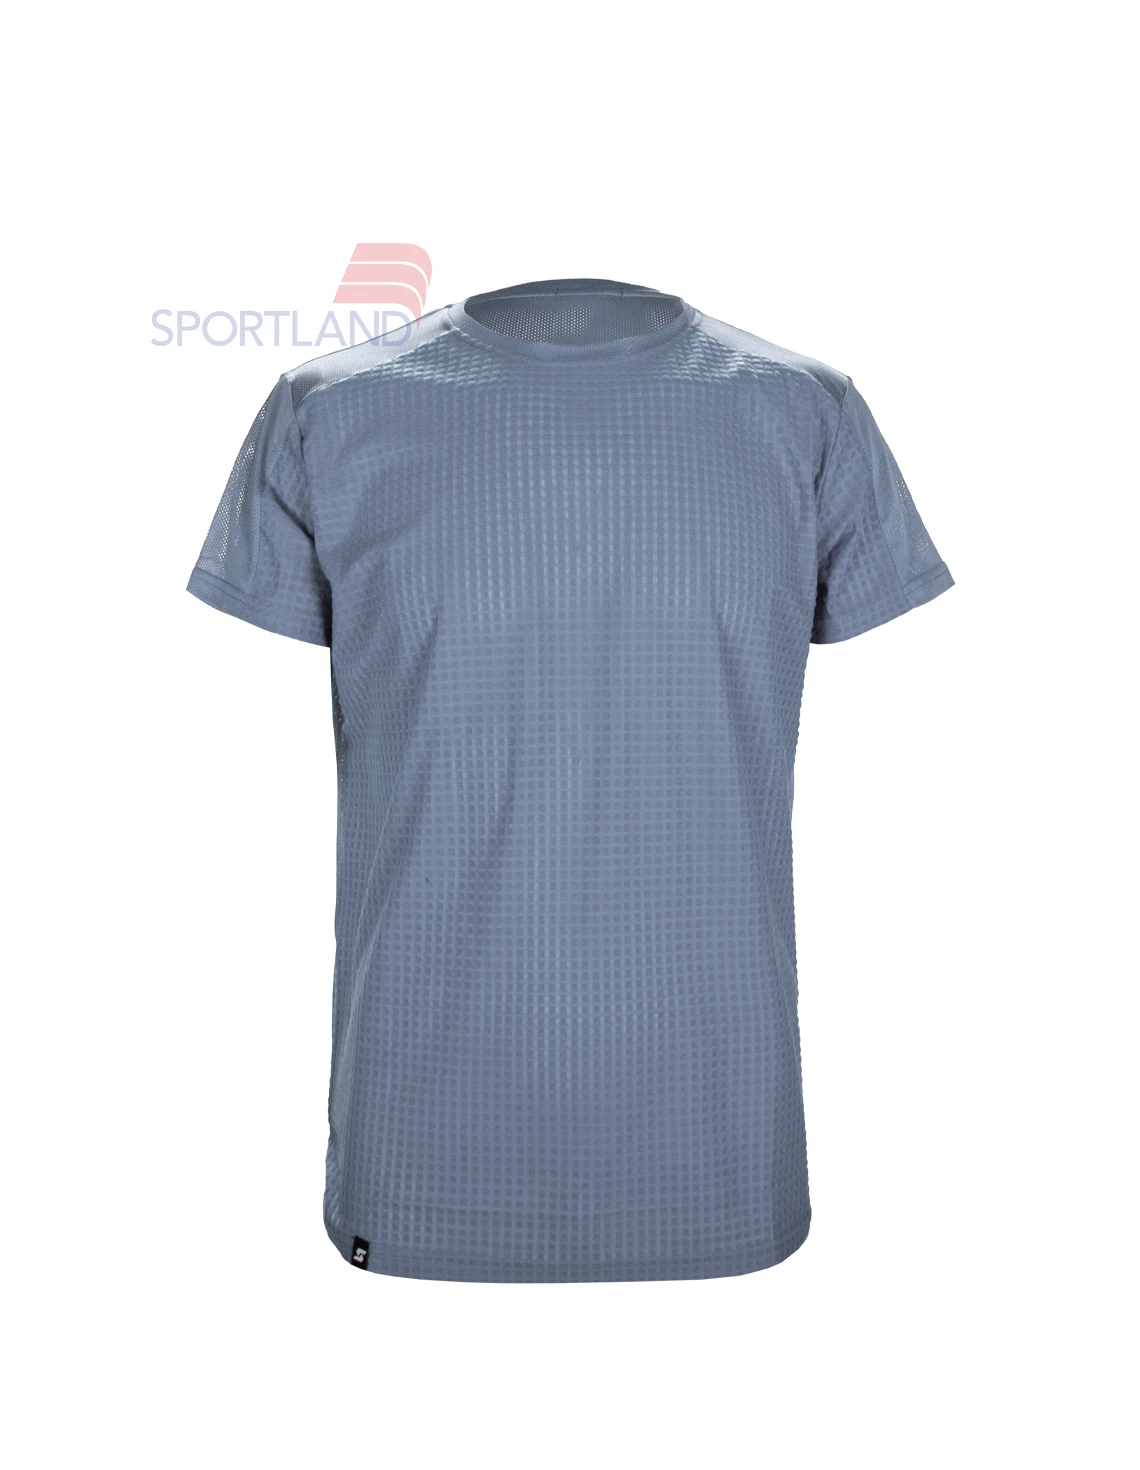 تی شرت ورزشی مردانه اسپورتلند Nico M